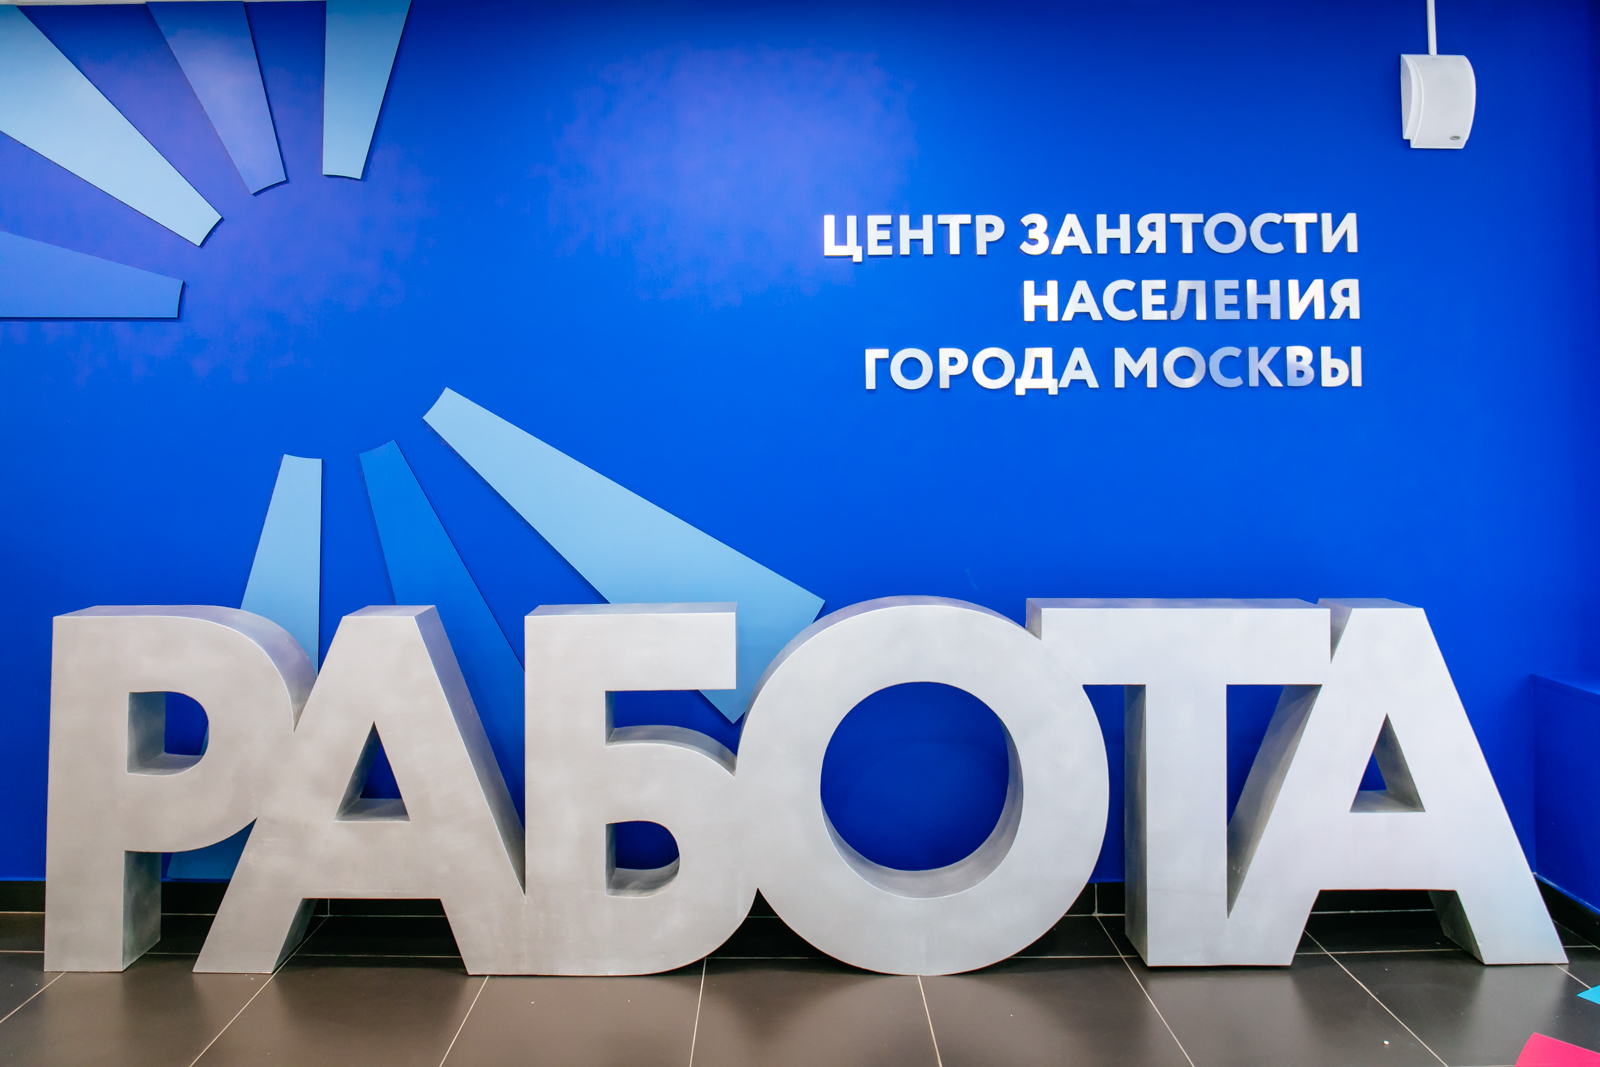 Работа в Москве от Центра занятости населения (биржа труда). Последние предложения работы 09 февраля 2023 г